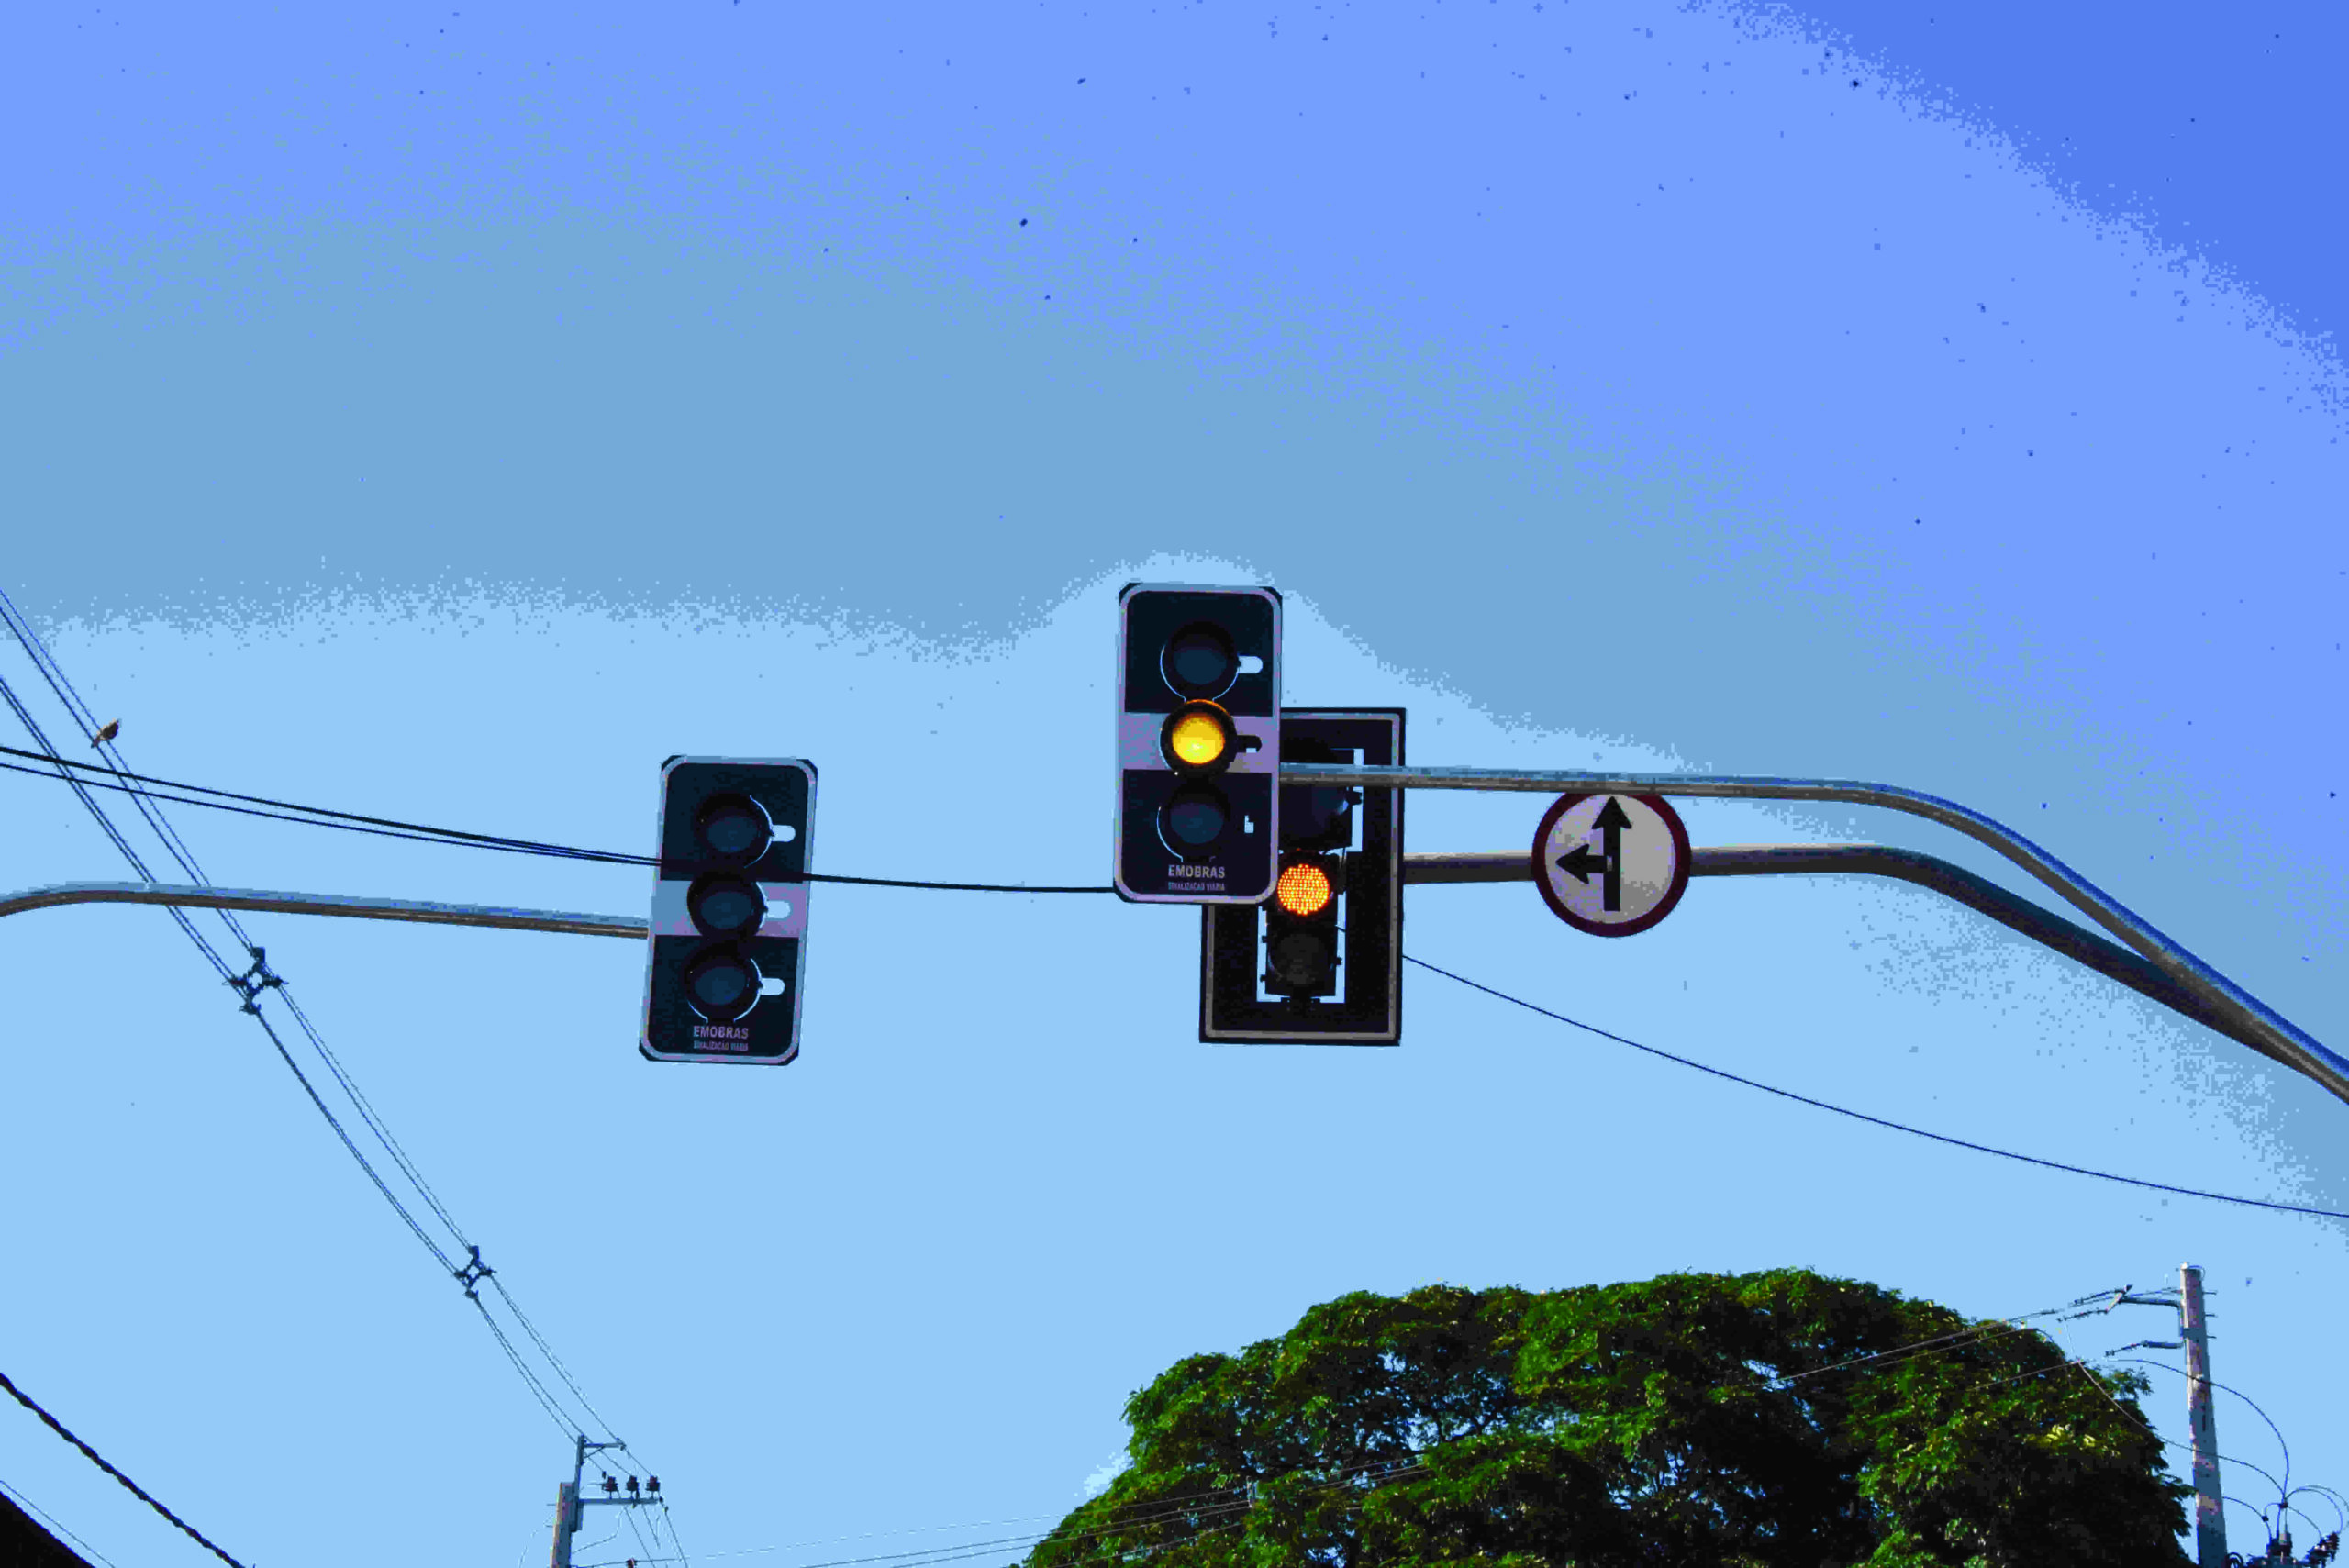 Caixa de marimbondos emperrou funcionamento dos semáforos da rua